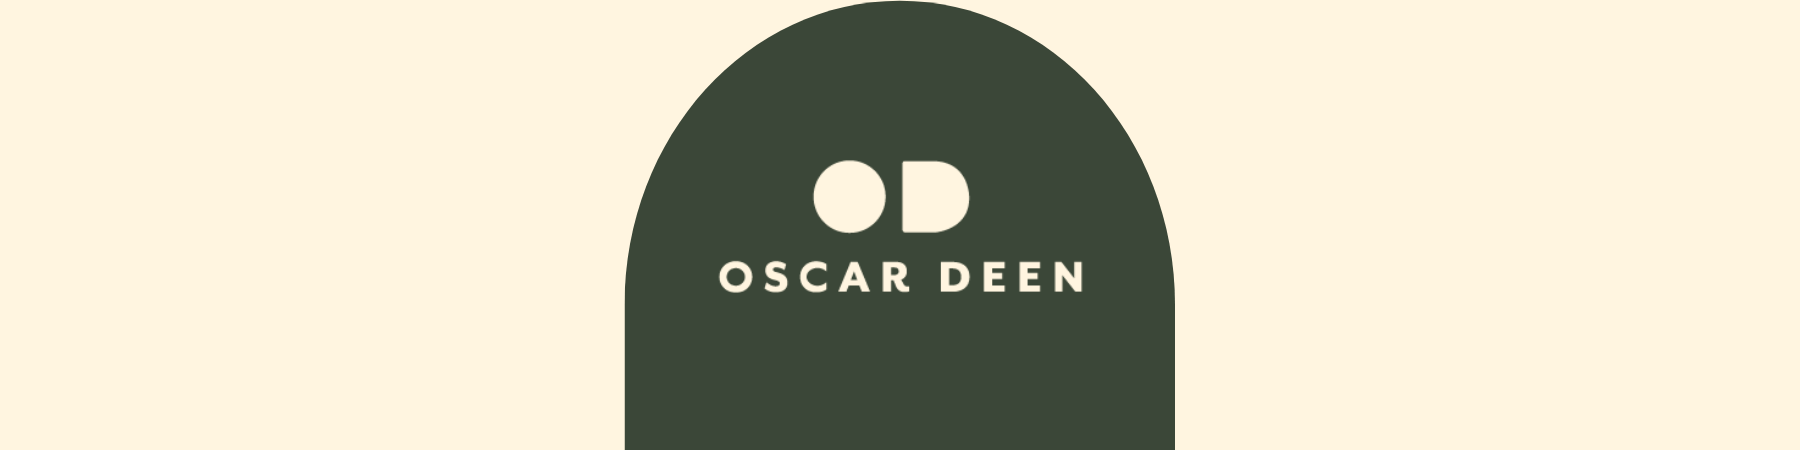 Oscar Deen at The Local Merchants